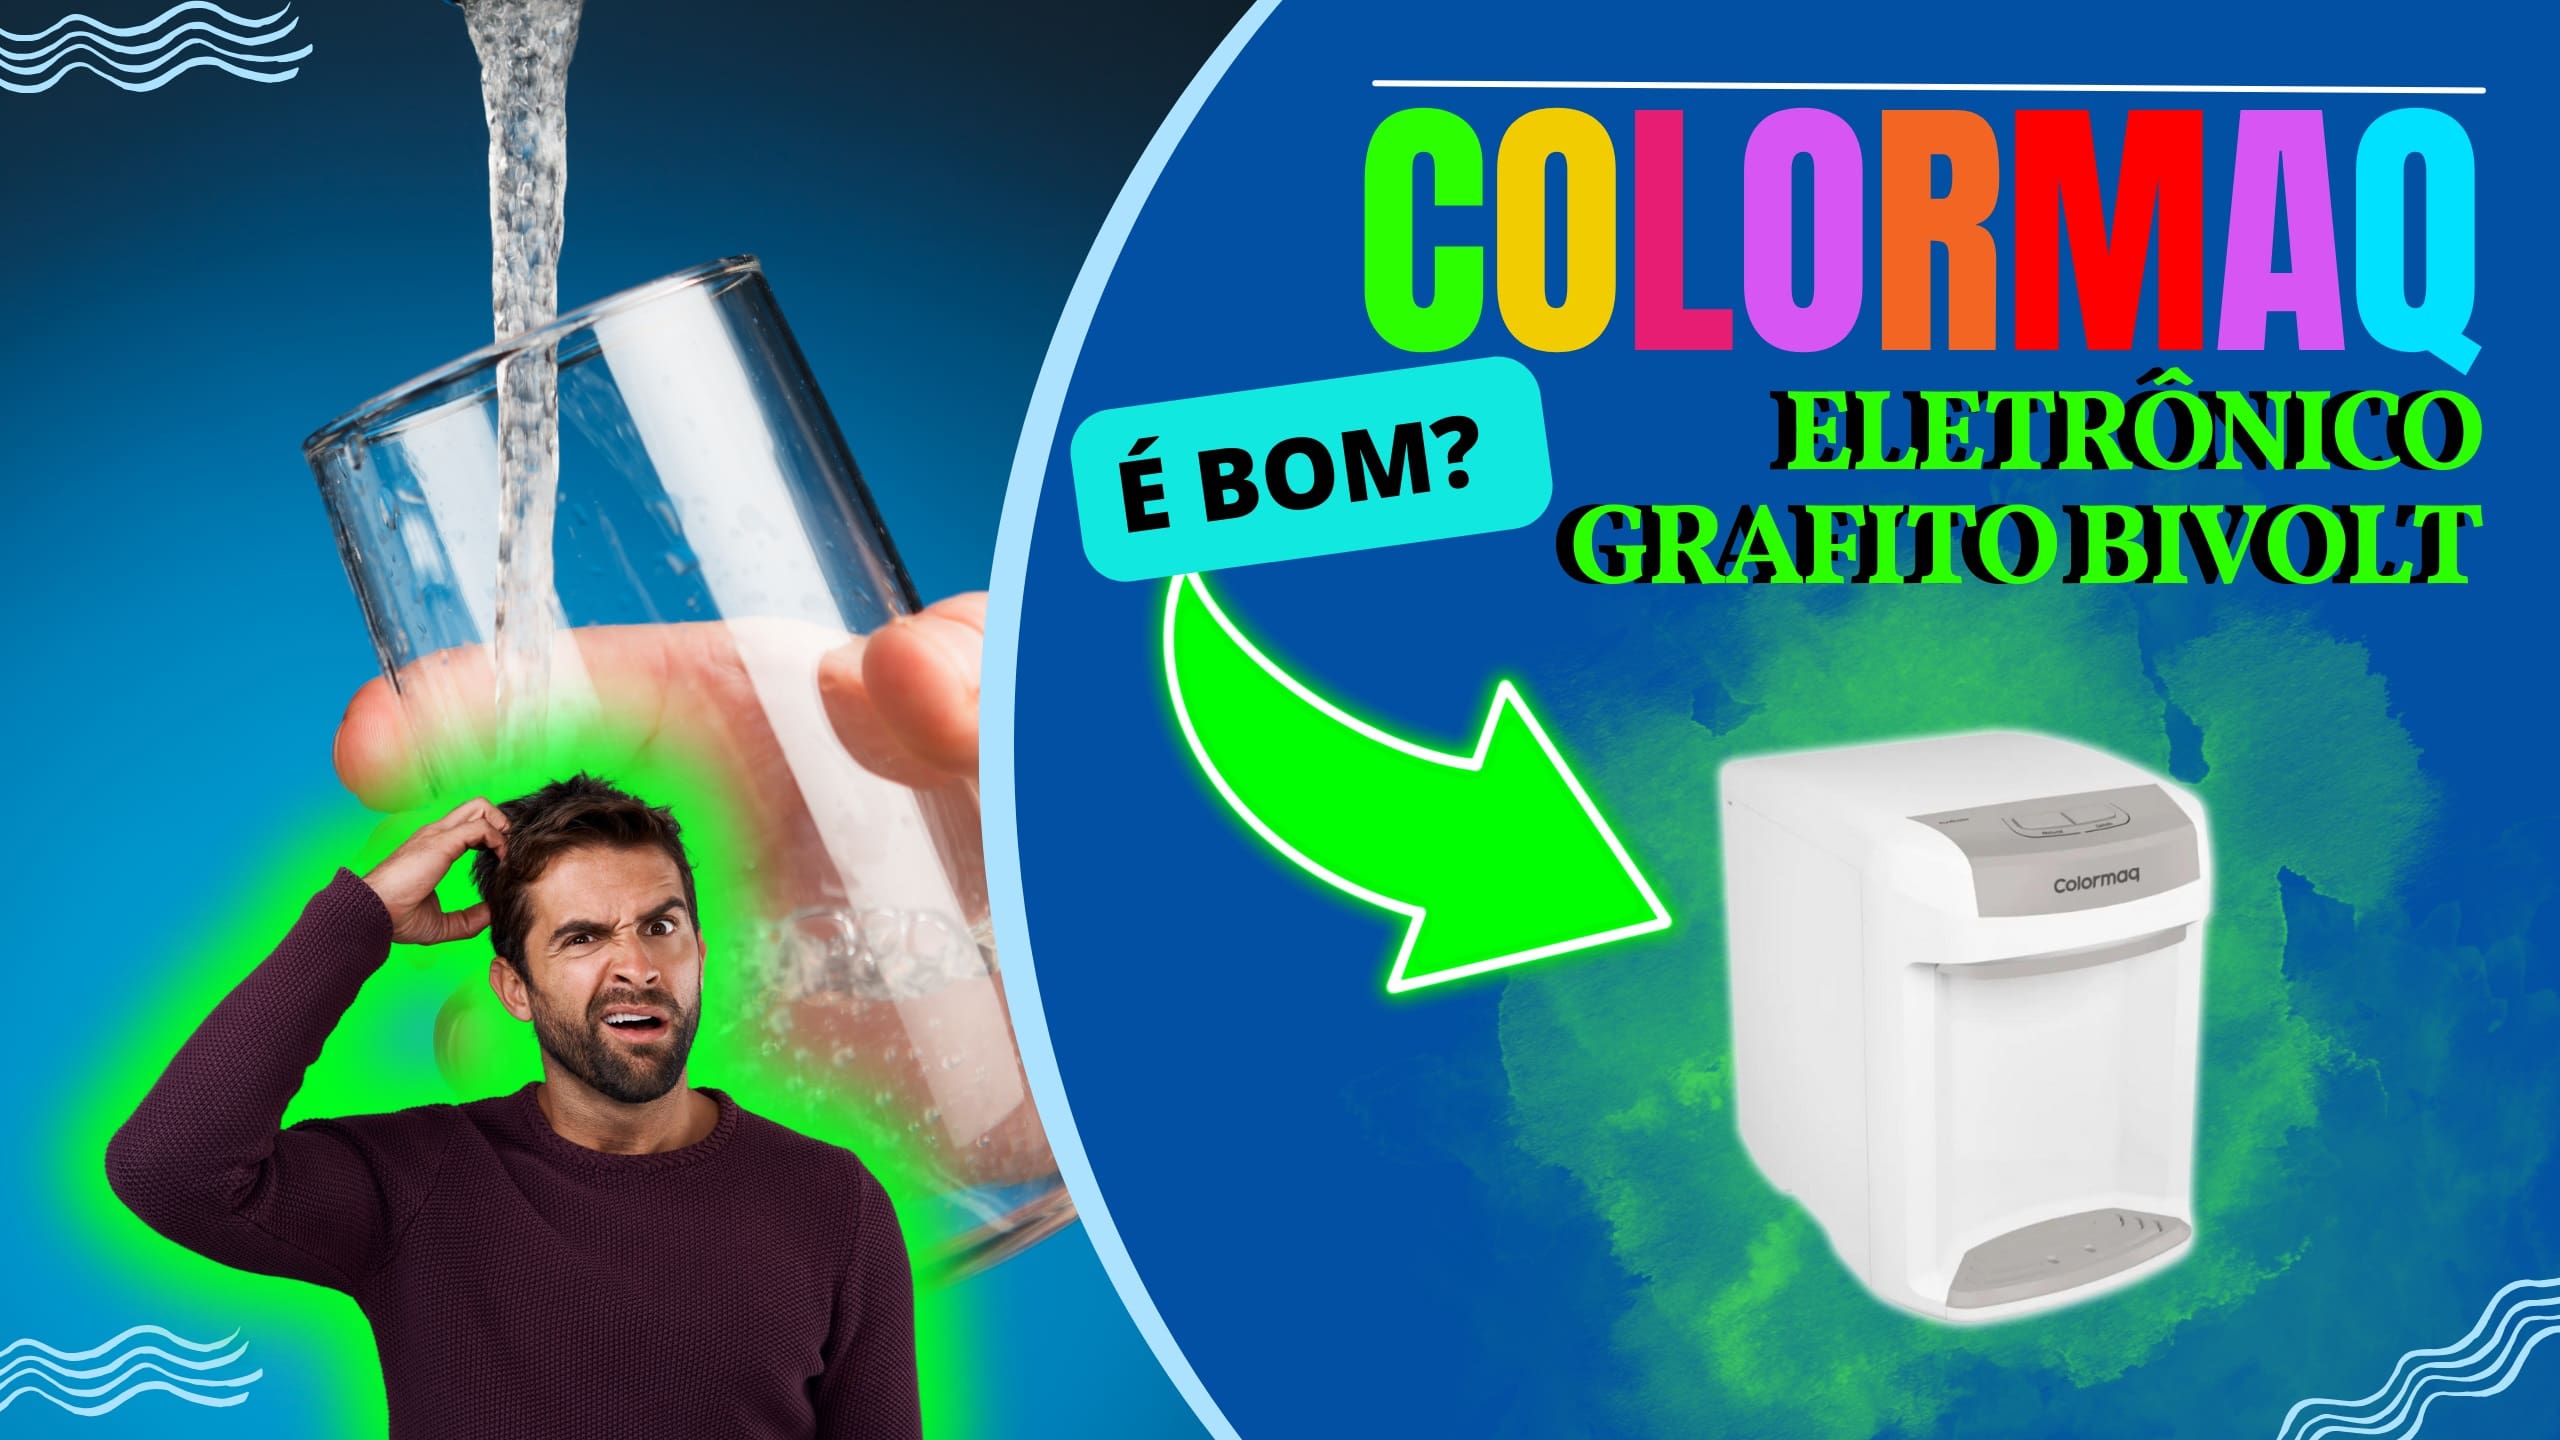 O Colormaq eletrônico natural gelada grafito bivolt é bom?